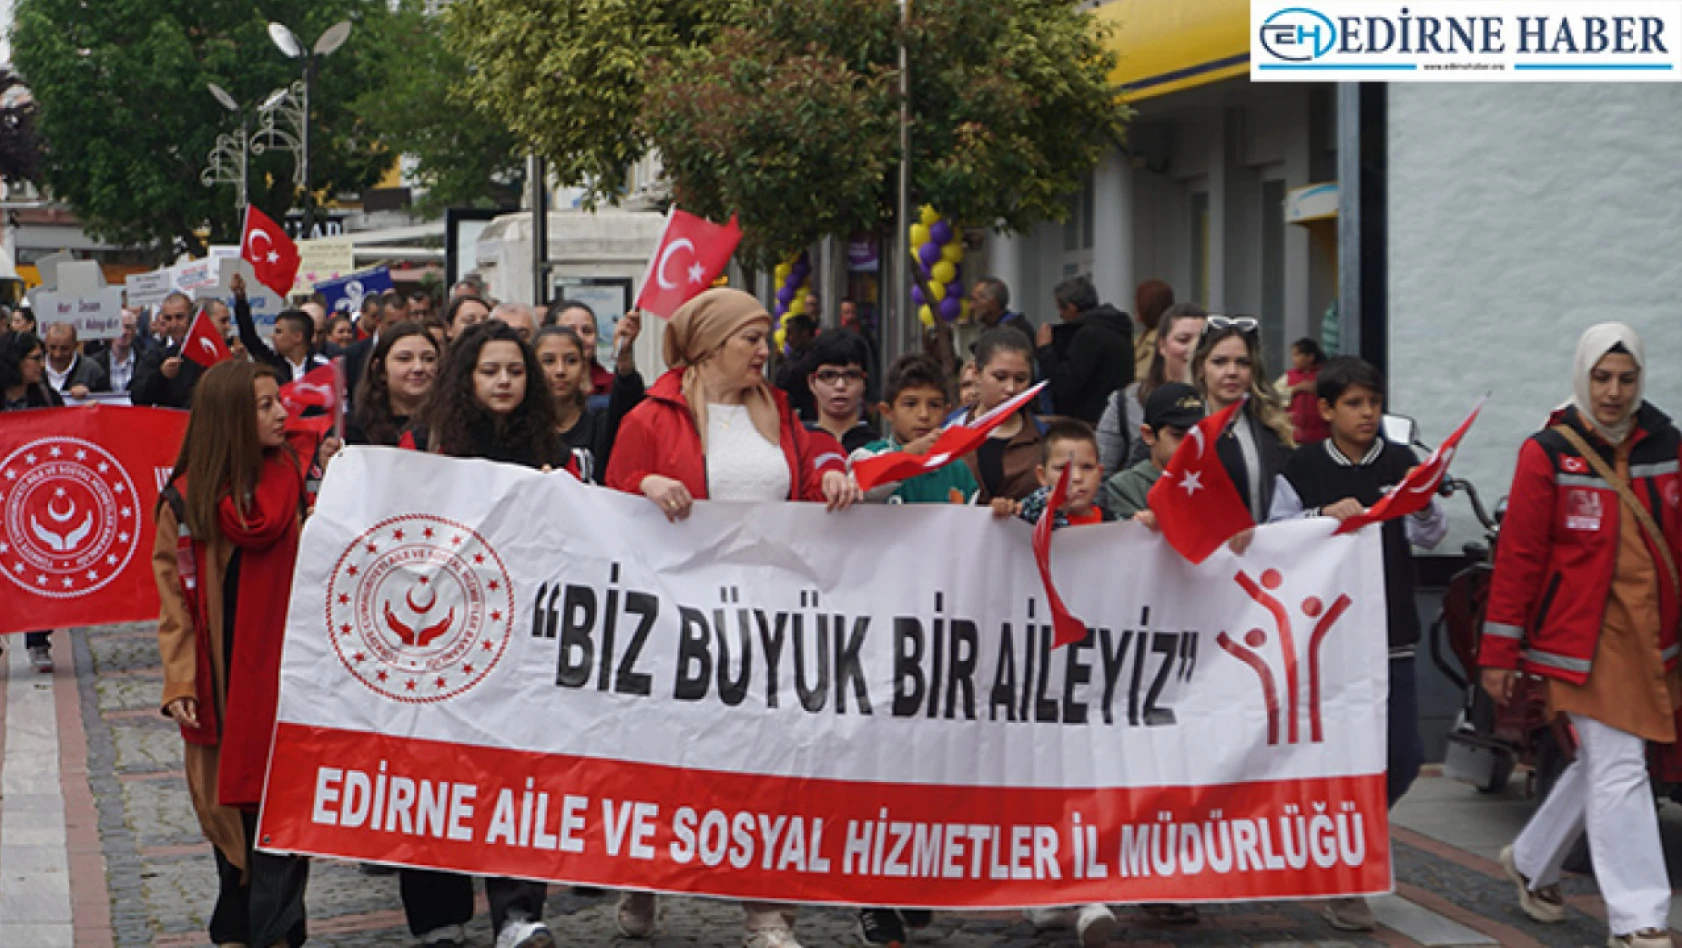 Edirne'de Engelliler Haftası dolayısıyla farkındalık yürüyüşü gerçekleştirildi.